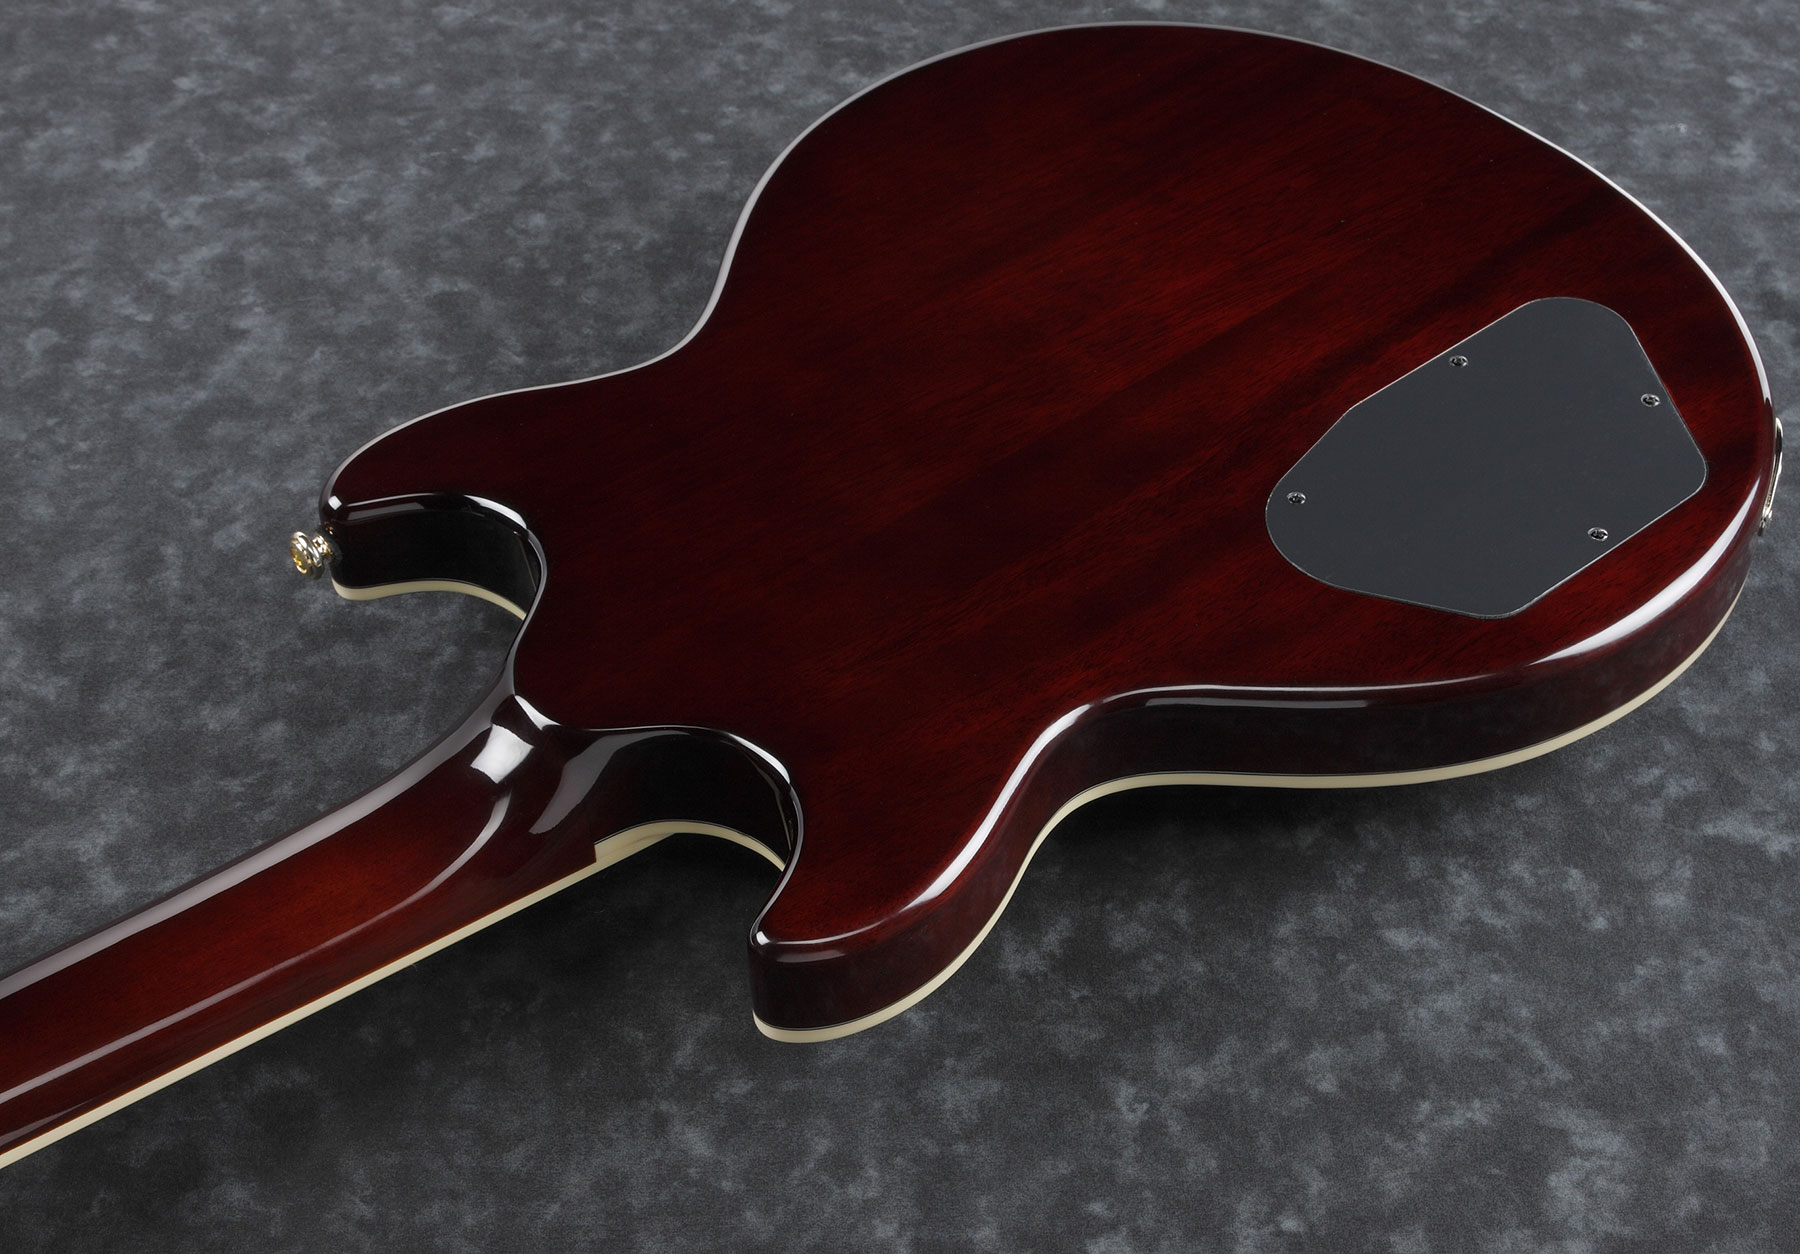 Ibanez Ar520hfm Vls Standard Hh Ht Jat - Violin Sunburst - Hollow-body electric guitar - Variation 3